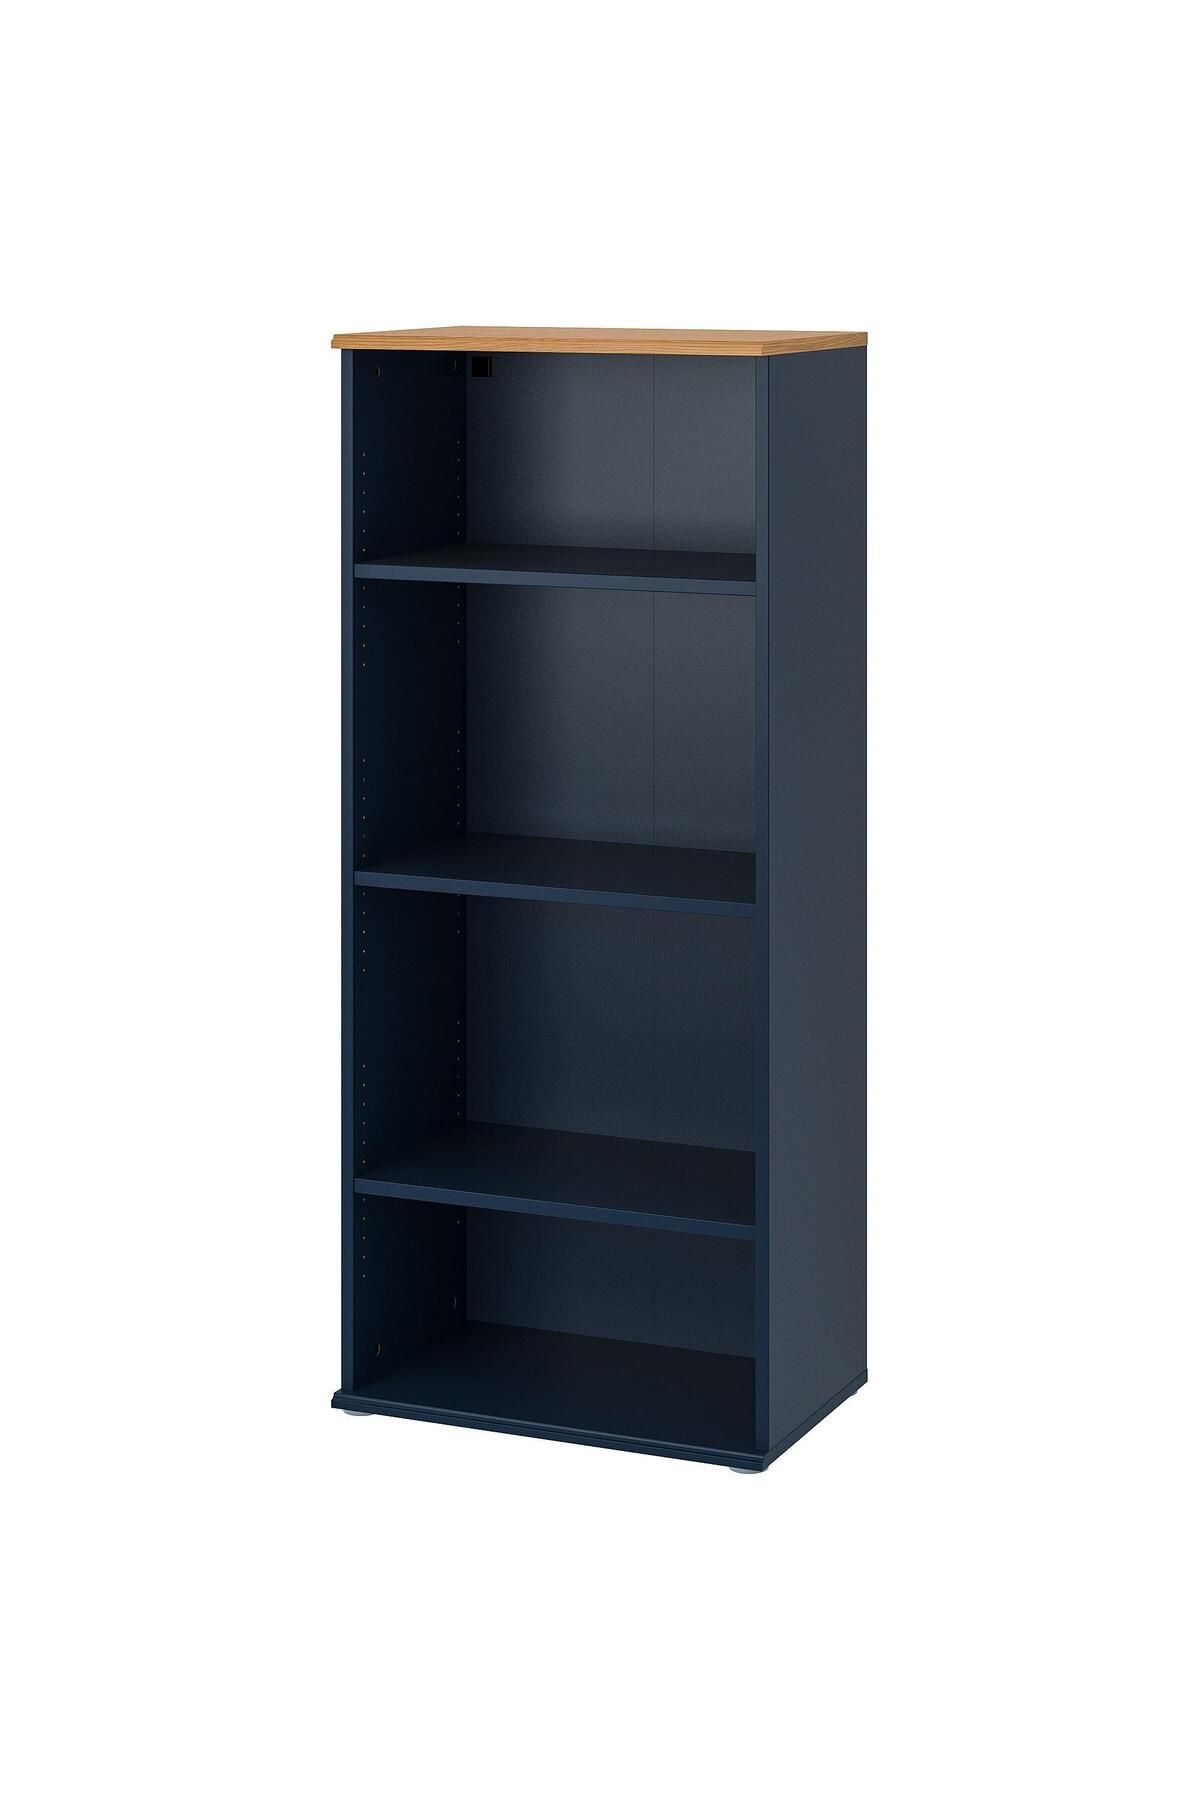 IKEA Açık Kitaplık Raf Ünitesi Koyu Mavi Renk MeridyenDukkan 60x140 cm Ev Dekorasyonu